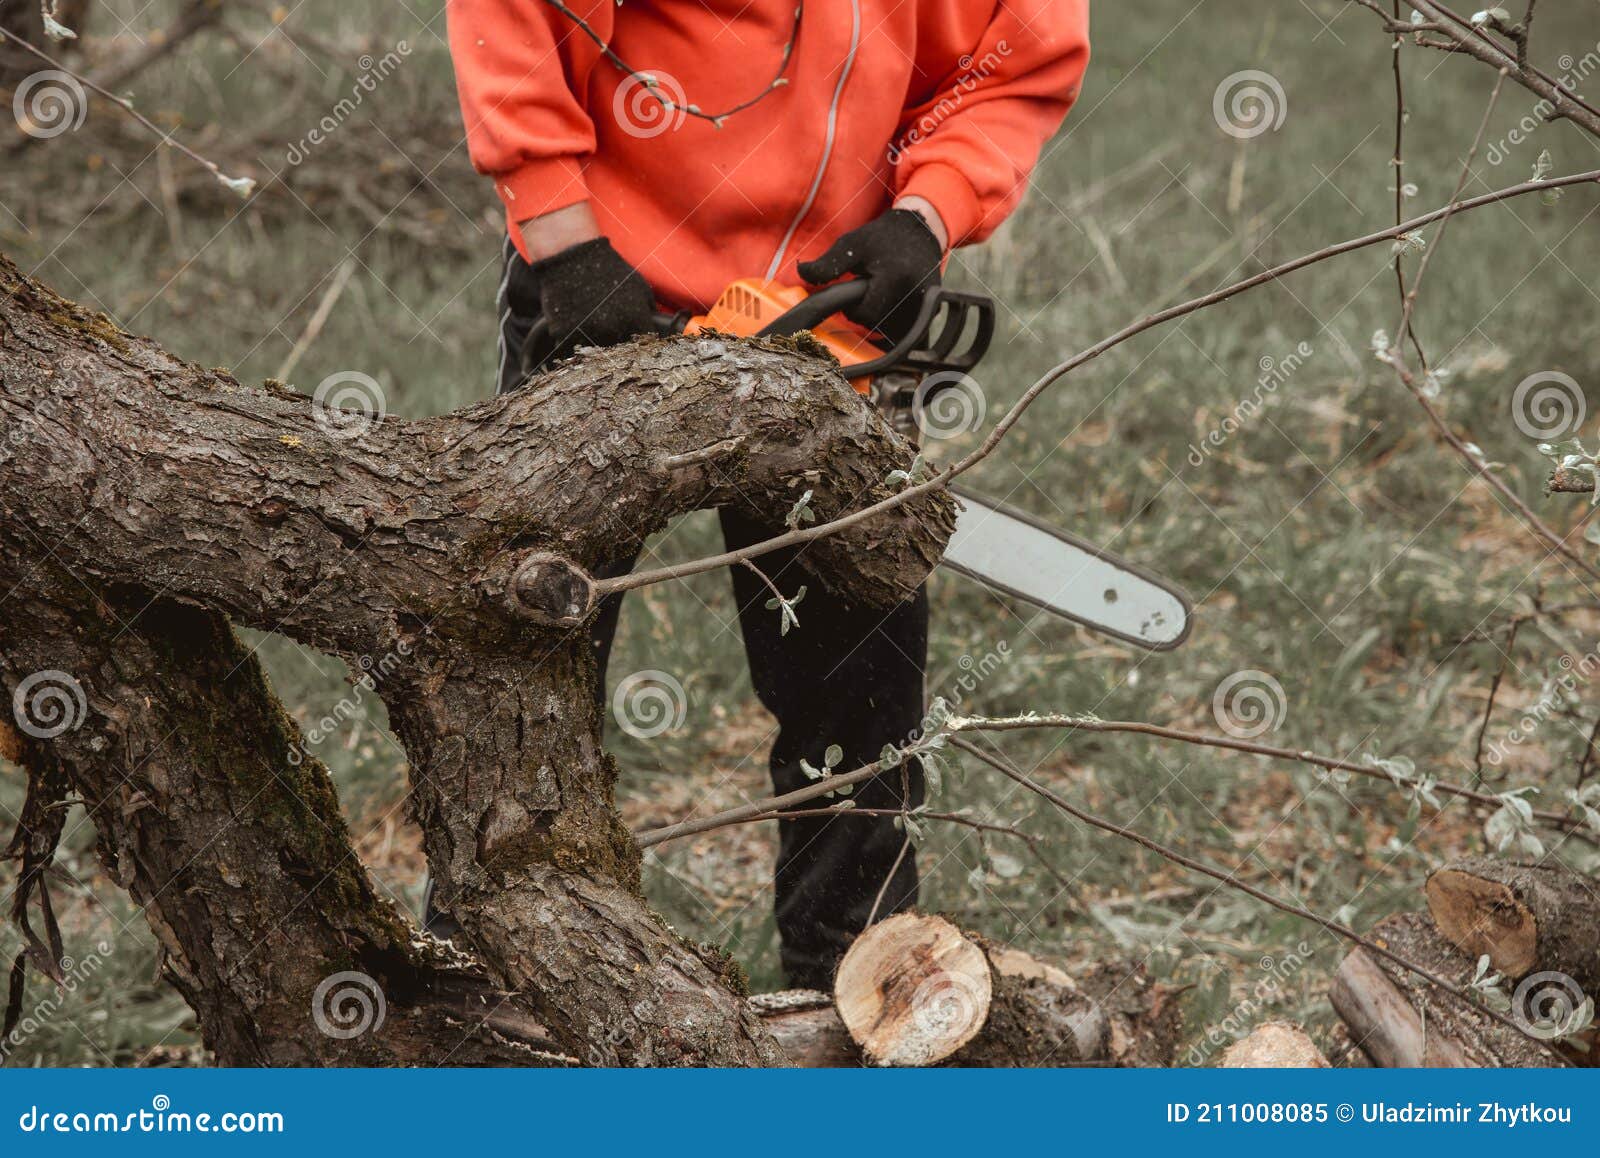 Un Hombre Corta Un árbol Con Una Motosierra. Poda De árboles. Foto